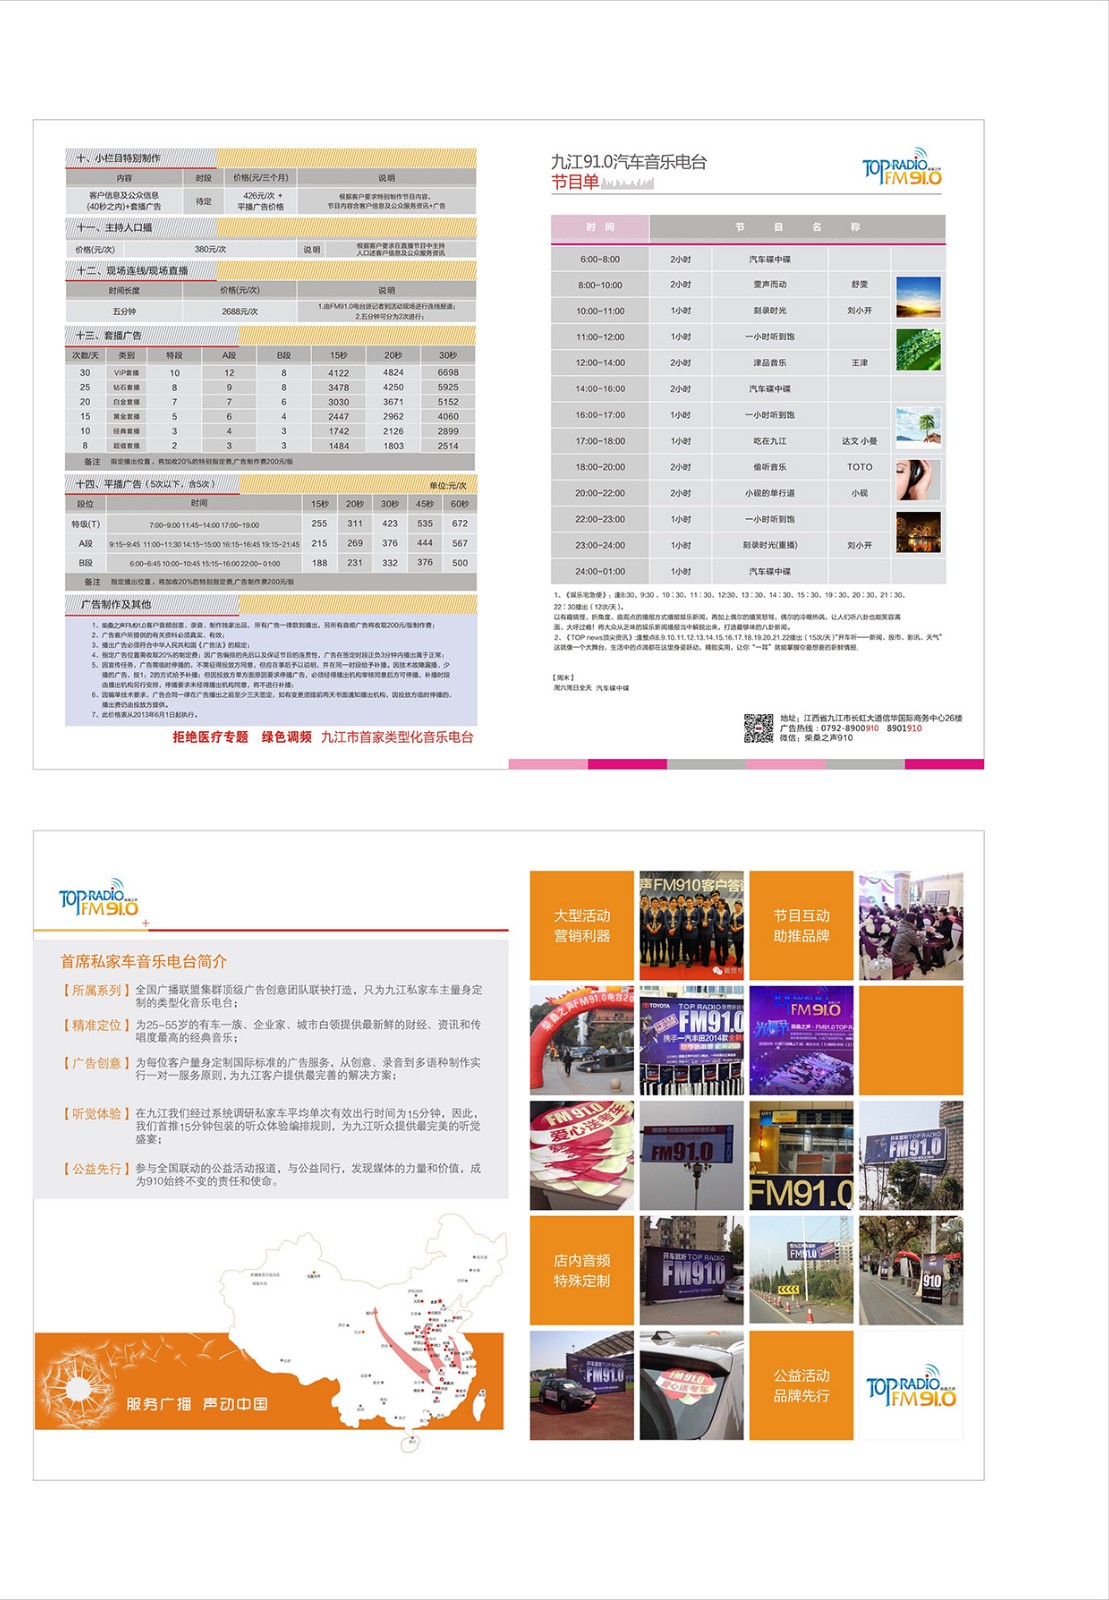 九江FM91.0音乐广播2018年广告刊例价格表